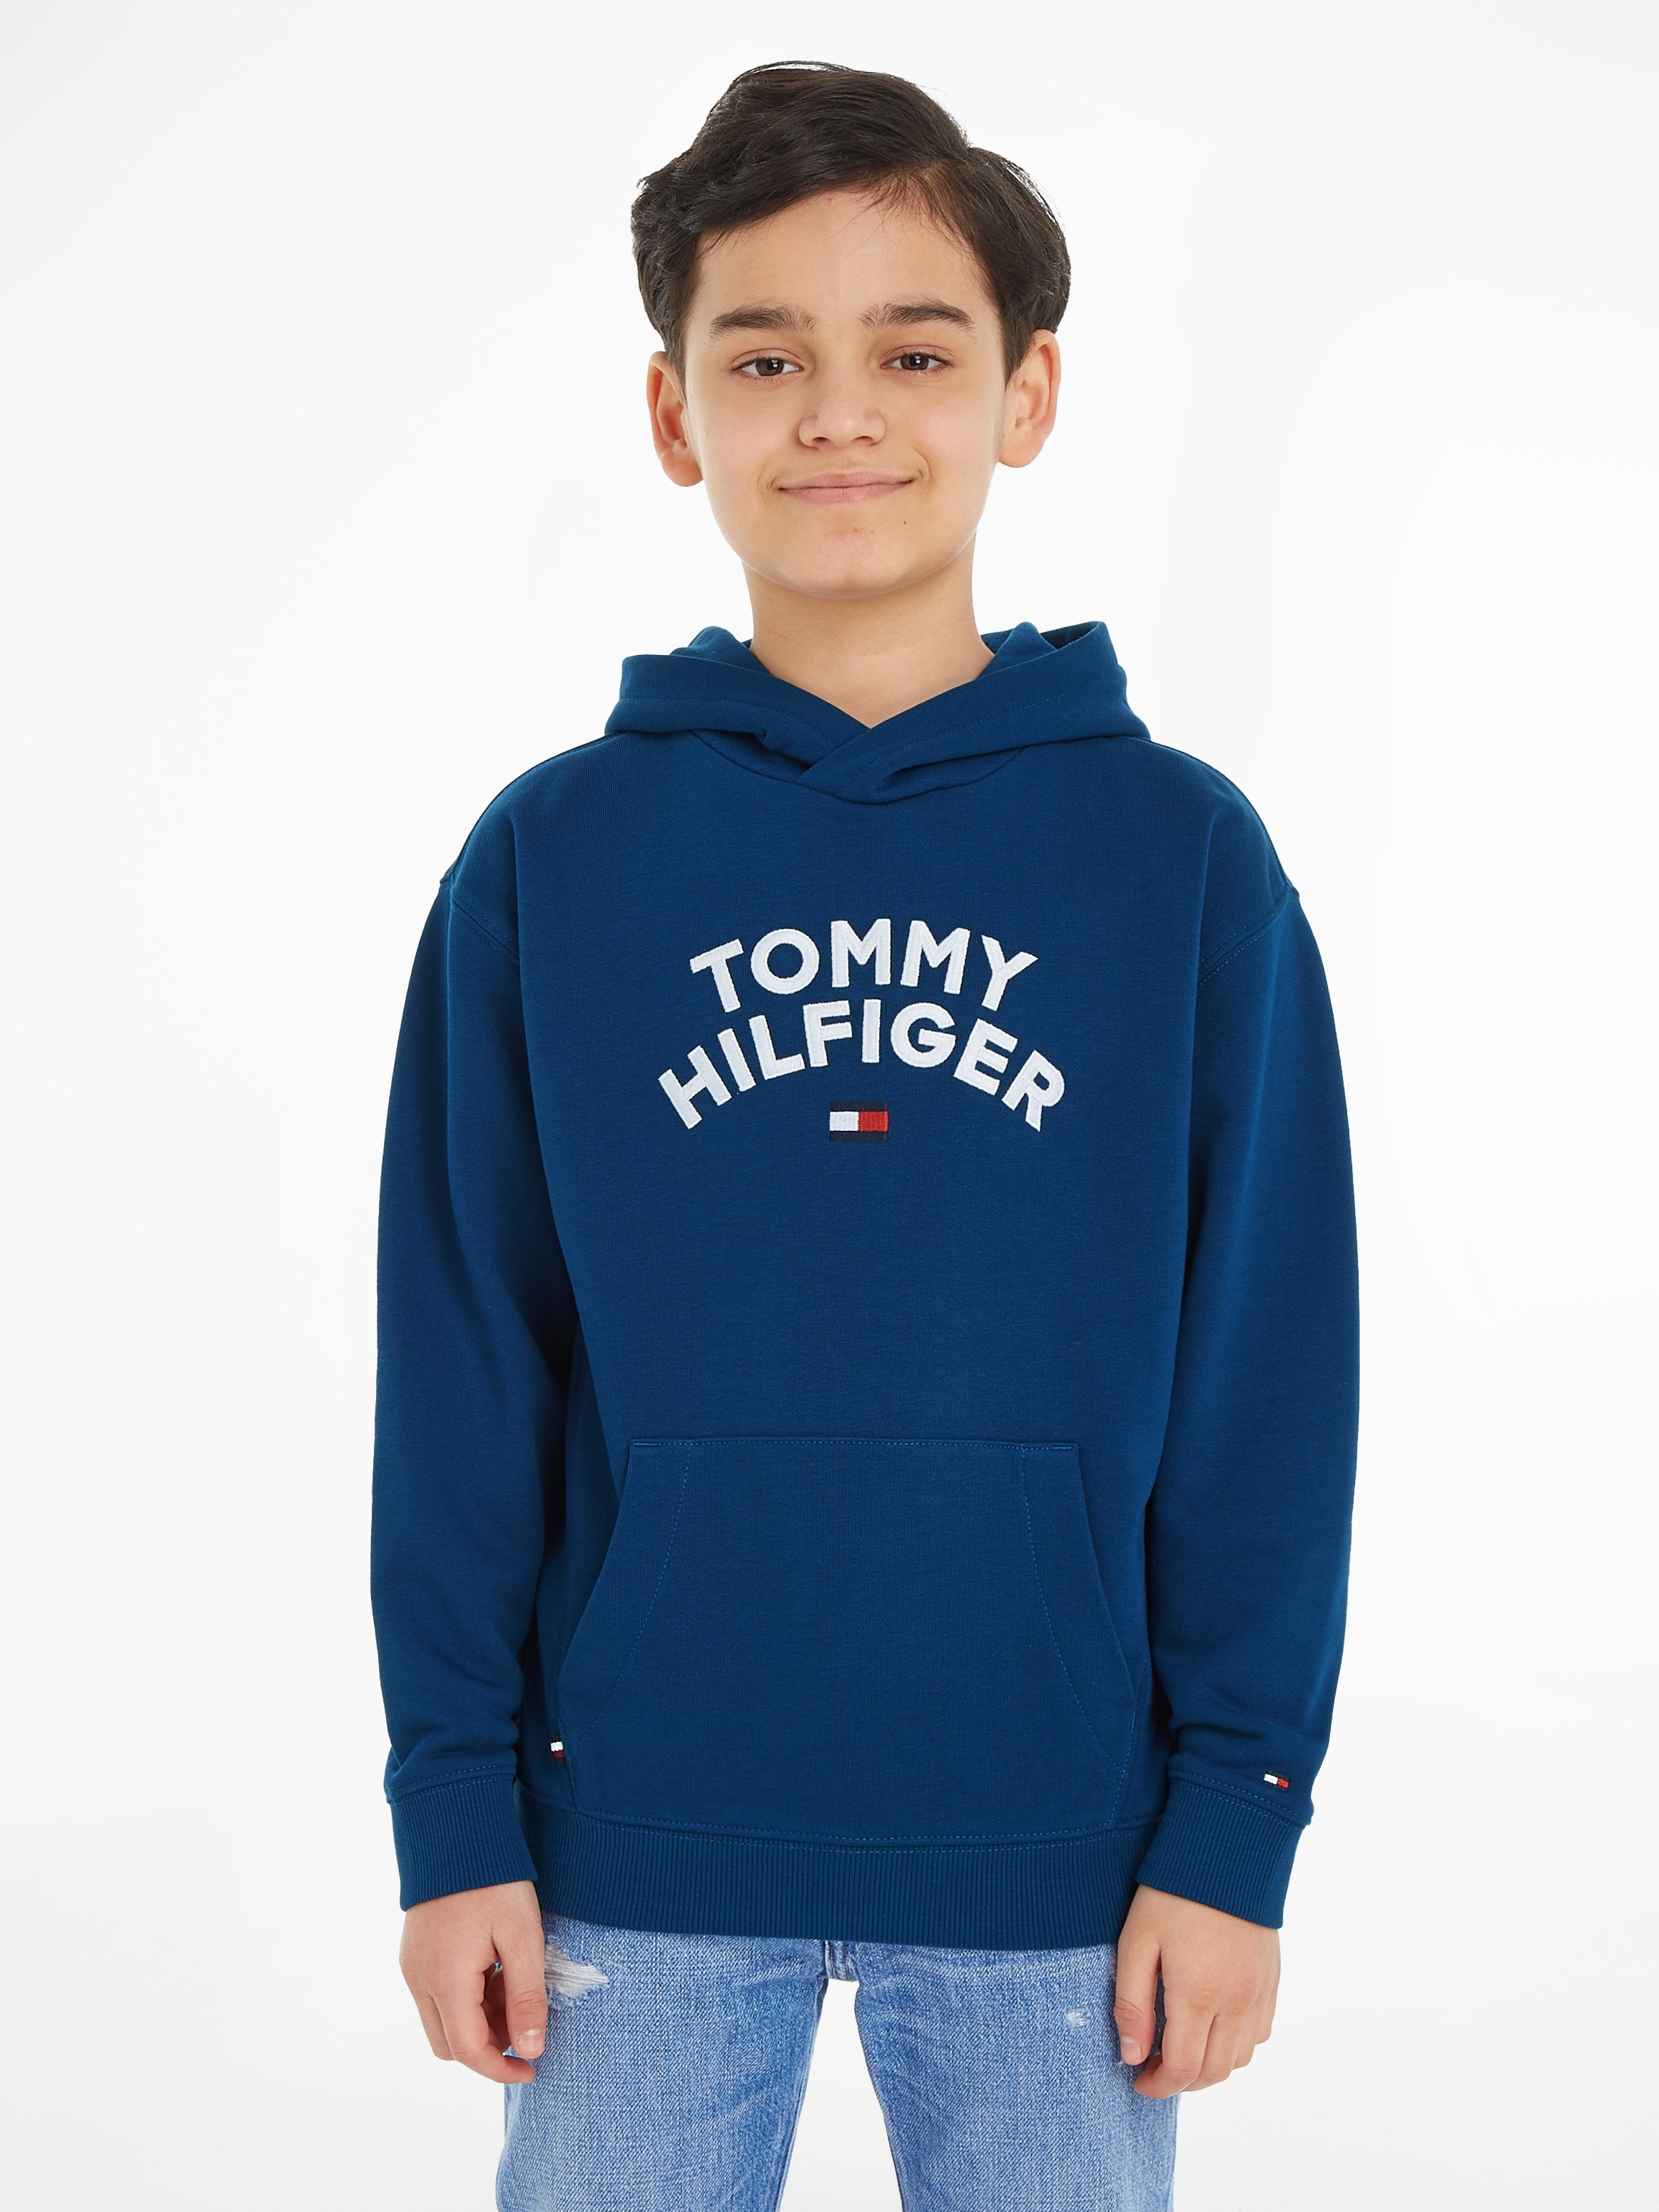 Tommy Hilfiger FLAG »TOMMY HOODIE« Hoodie réduit! prix à HILFIGER